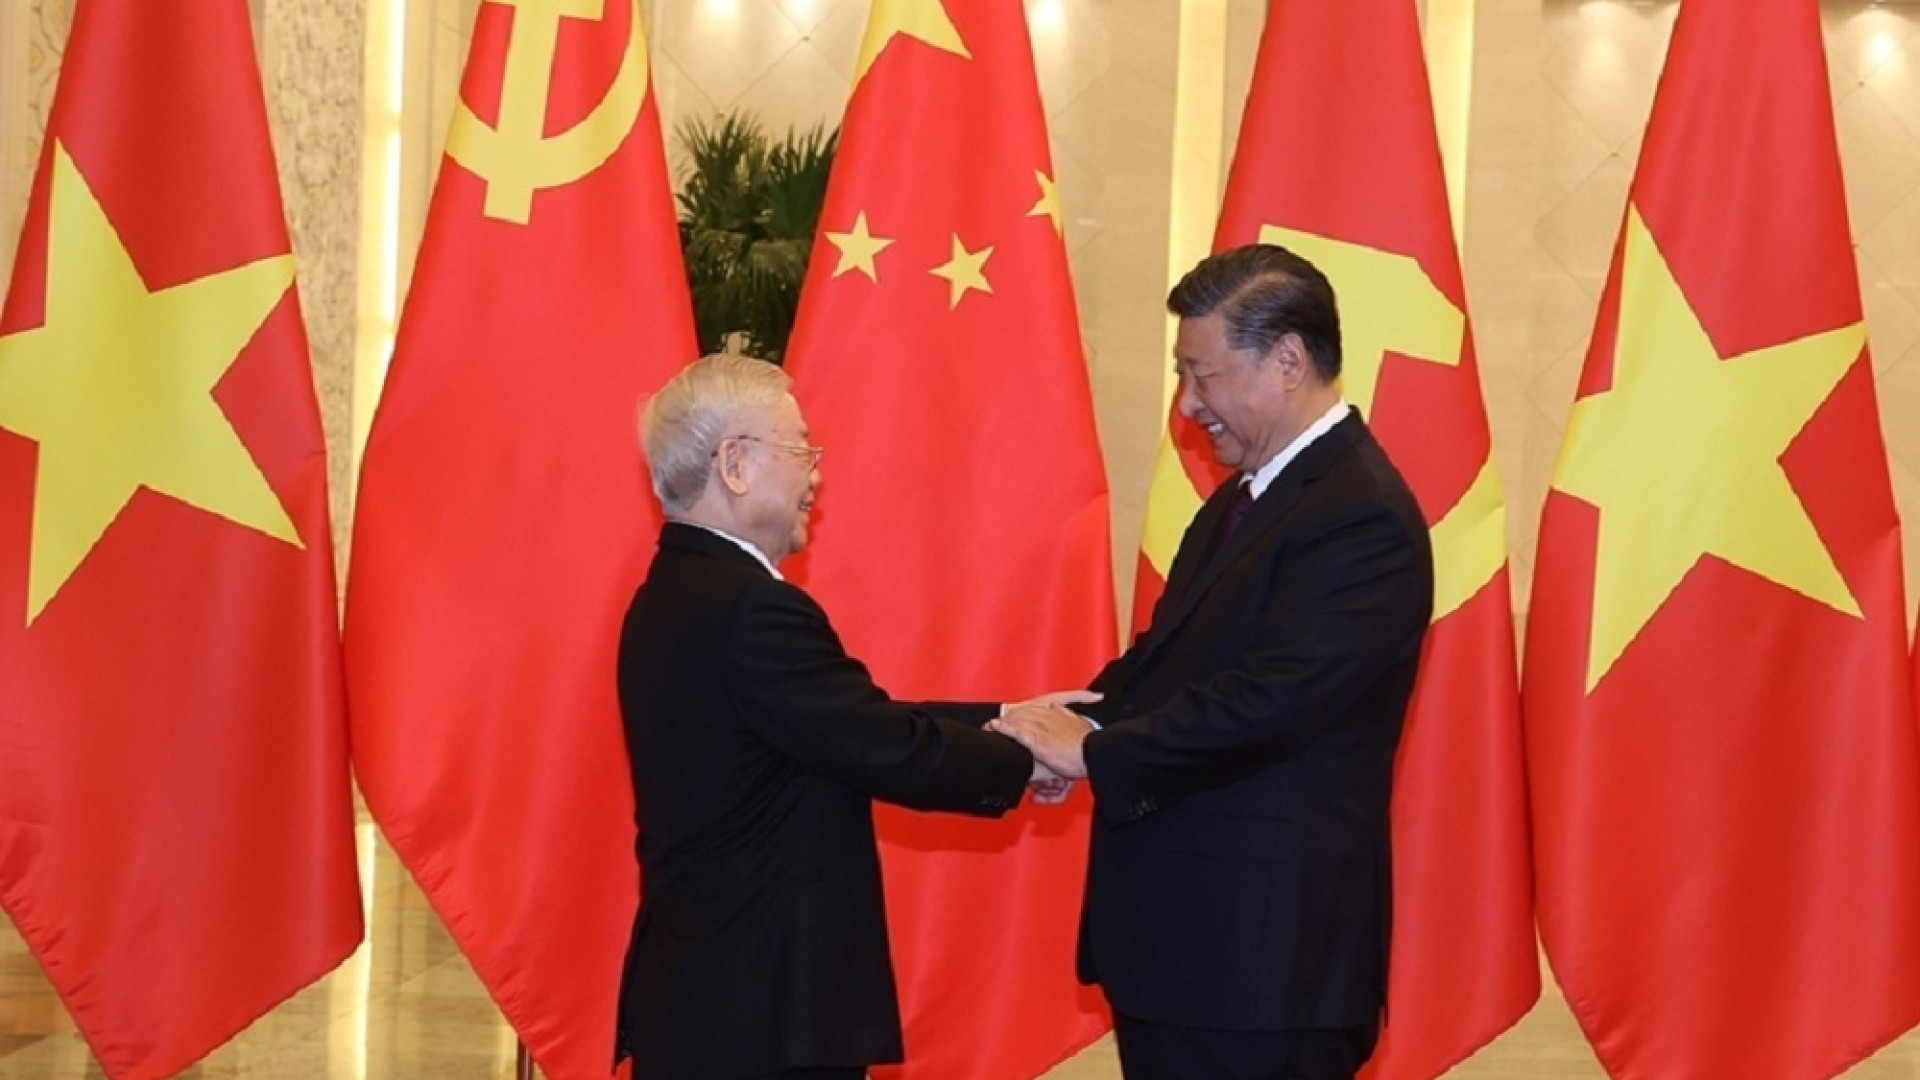 Báo chí Trung Quốc nêu bật những bước phát triển của quan hệ Việt Nam-Trung Quốc: Nhận thức chung đạt được giữa lãnh đạo Việt Nam-Trung Quốc đã được thực hiện toàn diện